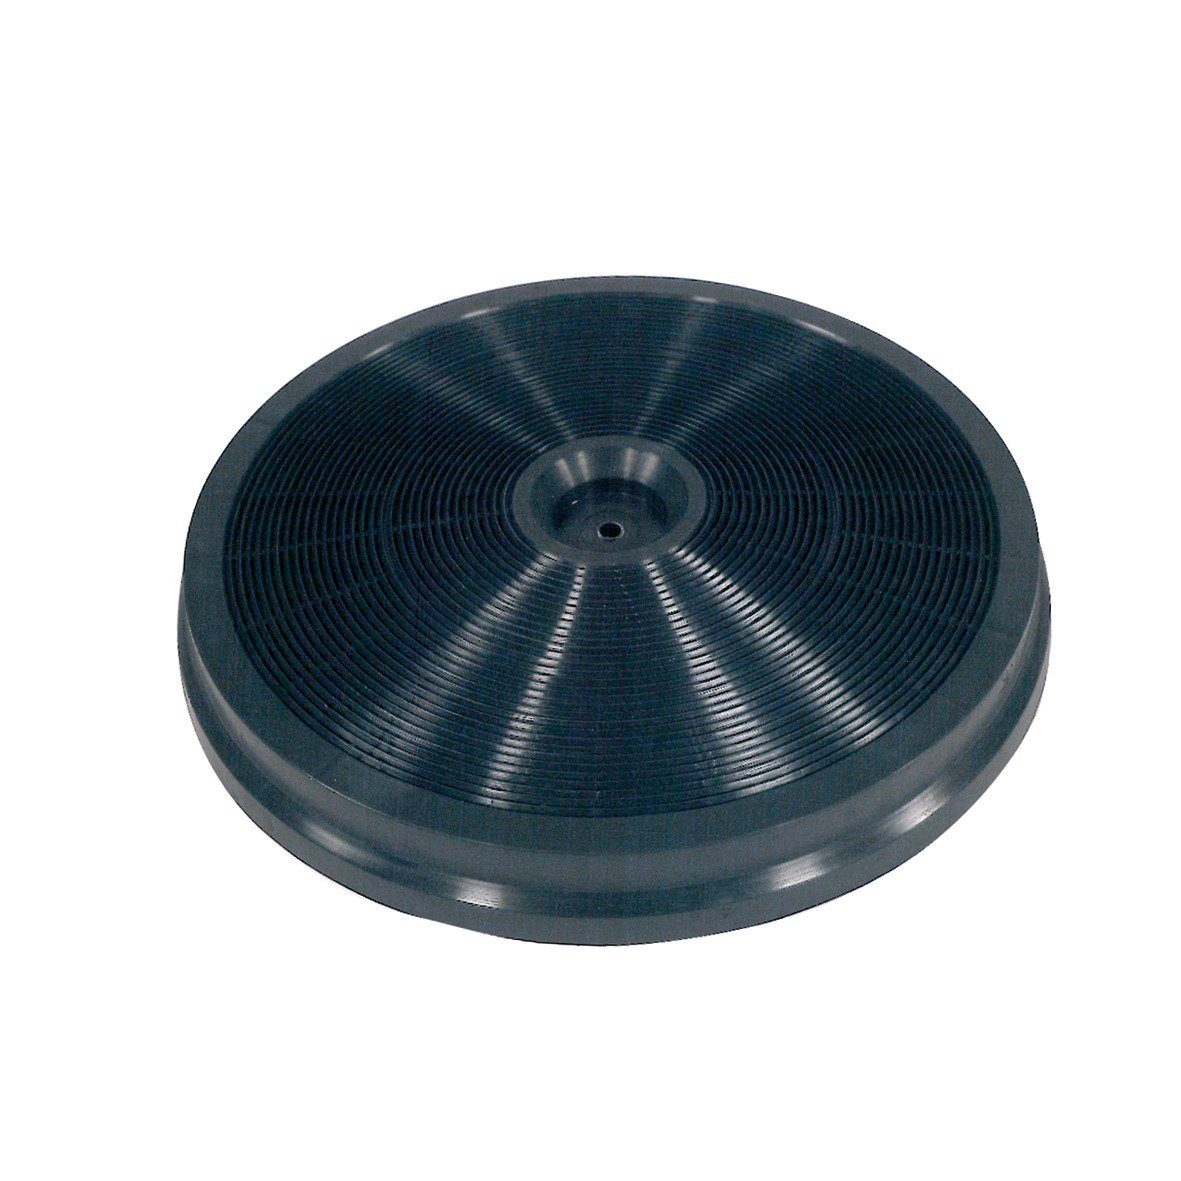 VIOKS Kohlefilter Filter Ersatz für Whirlpool 481281718521 TypF233 230mmØ, Zubehör für Dunstabzugshaube